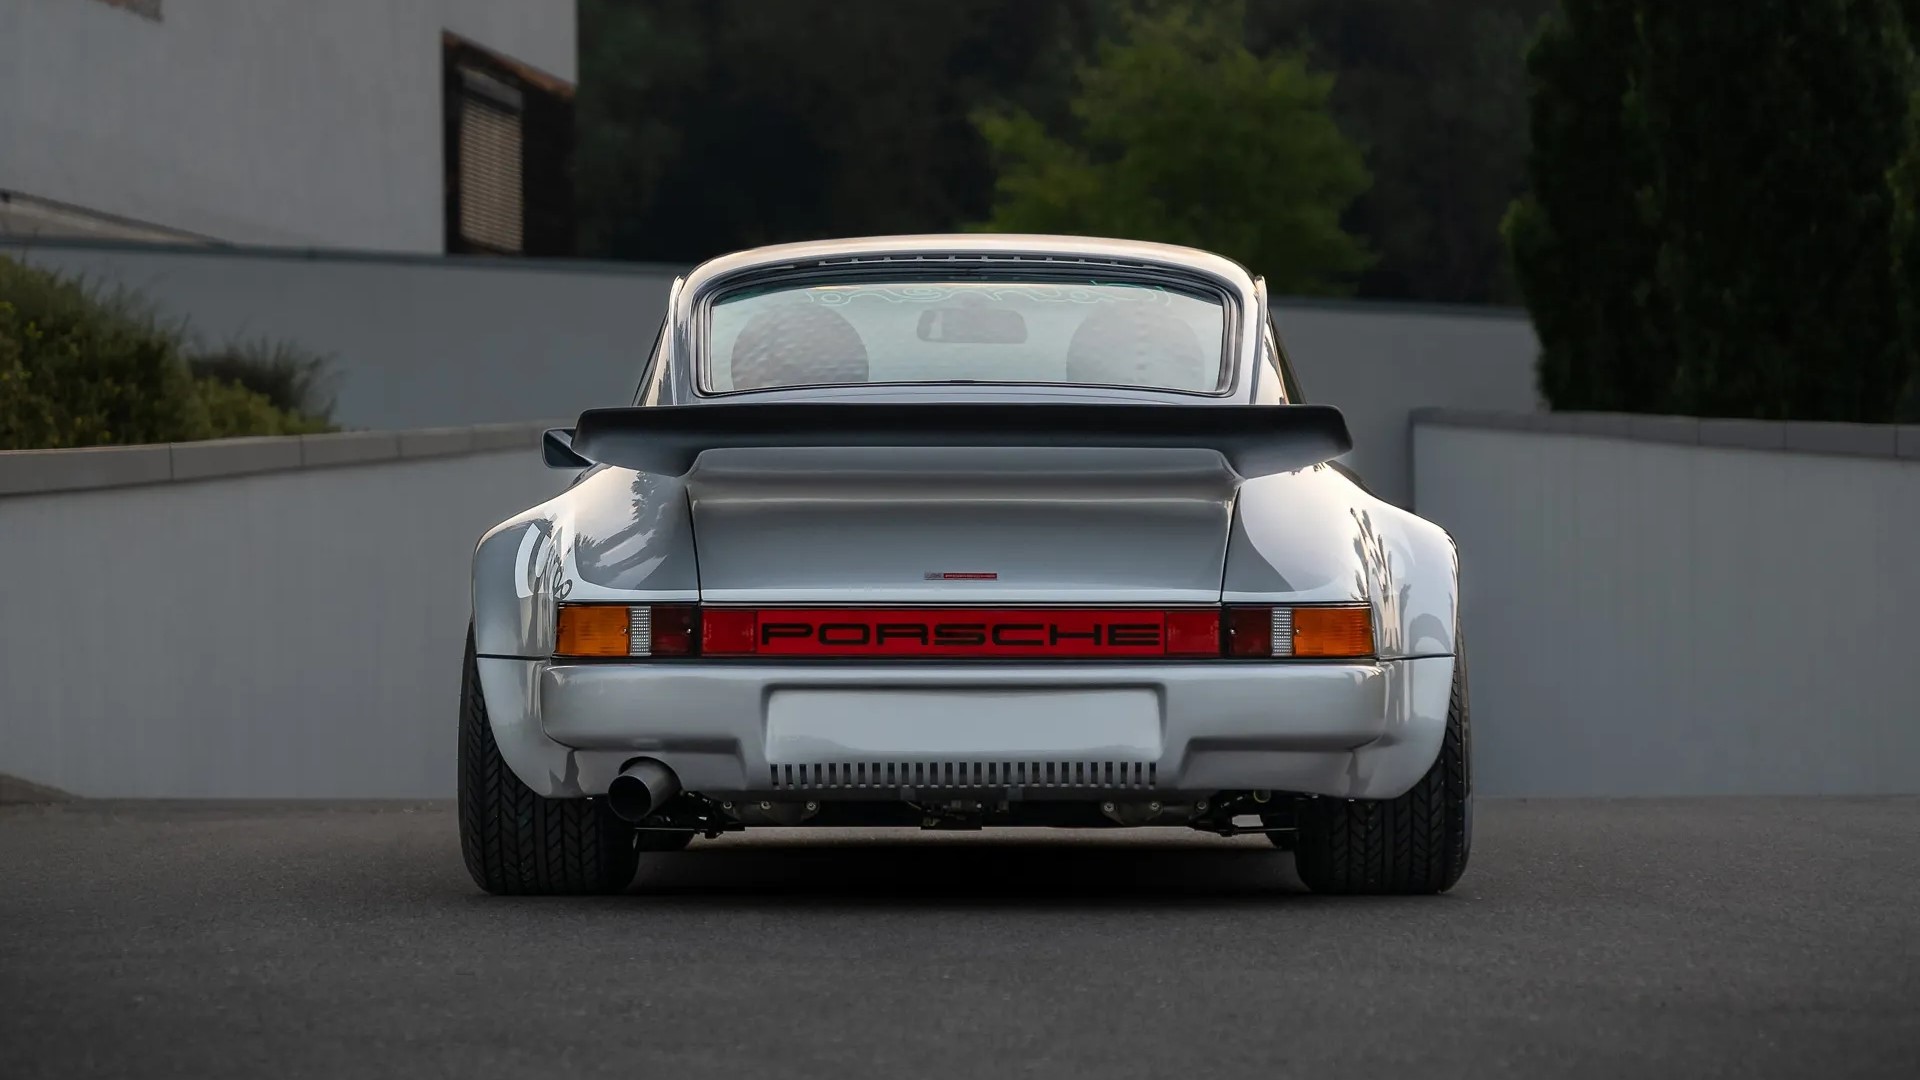 The Rear Profile Of The Original Porsche 911 Turbo Concept